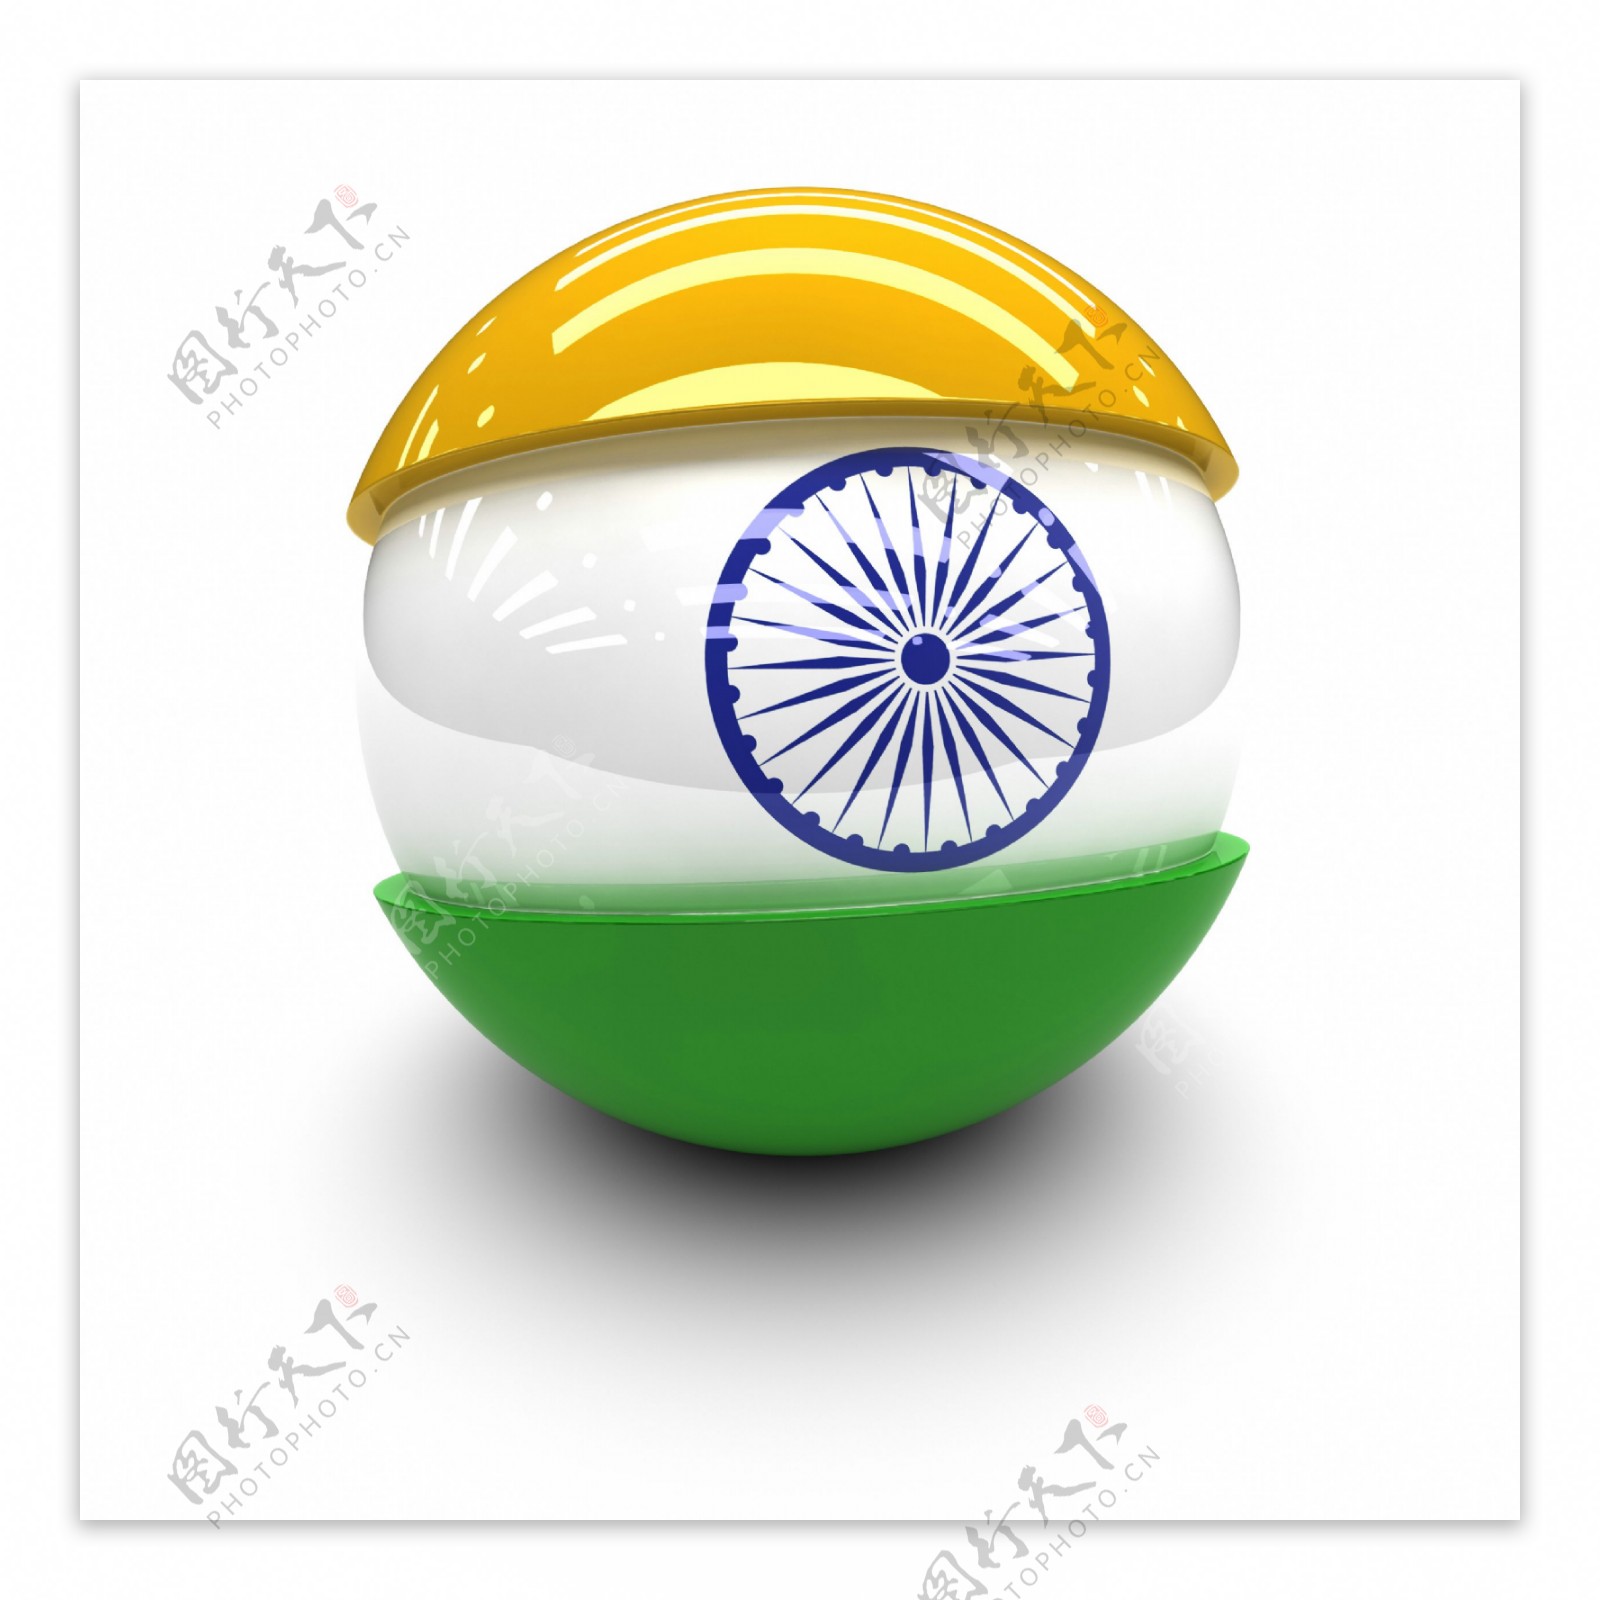 印度国旗球体图片